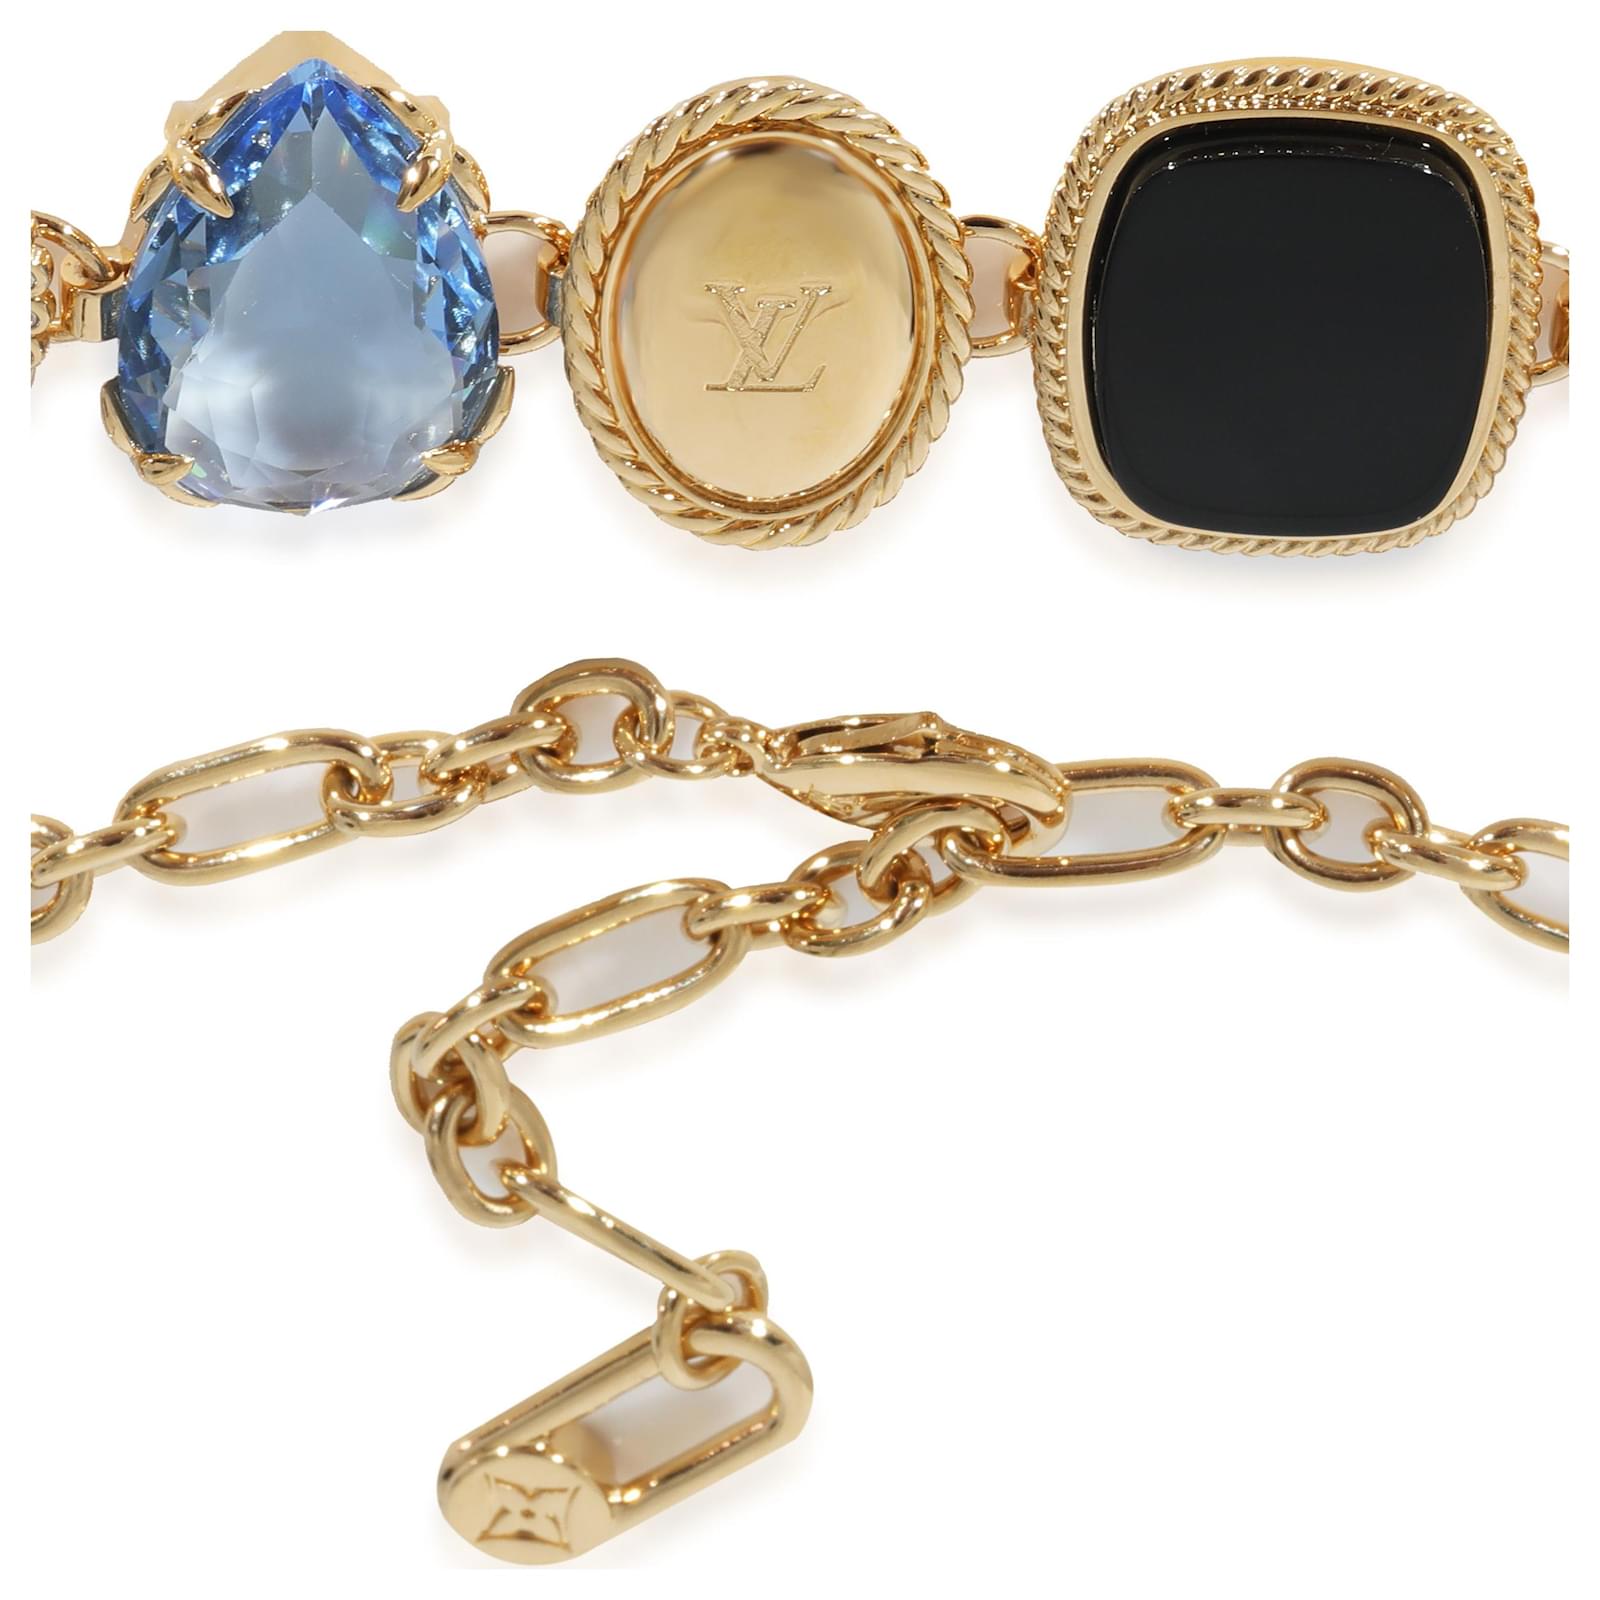 Louis Vuitton, Jewelry, Authentic Louis Vuitton Lv Tribute Necklace